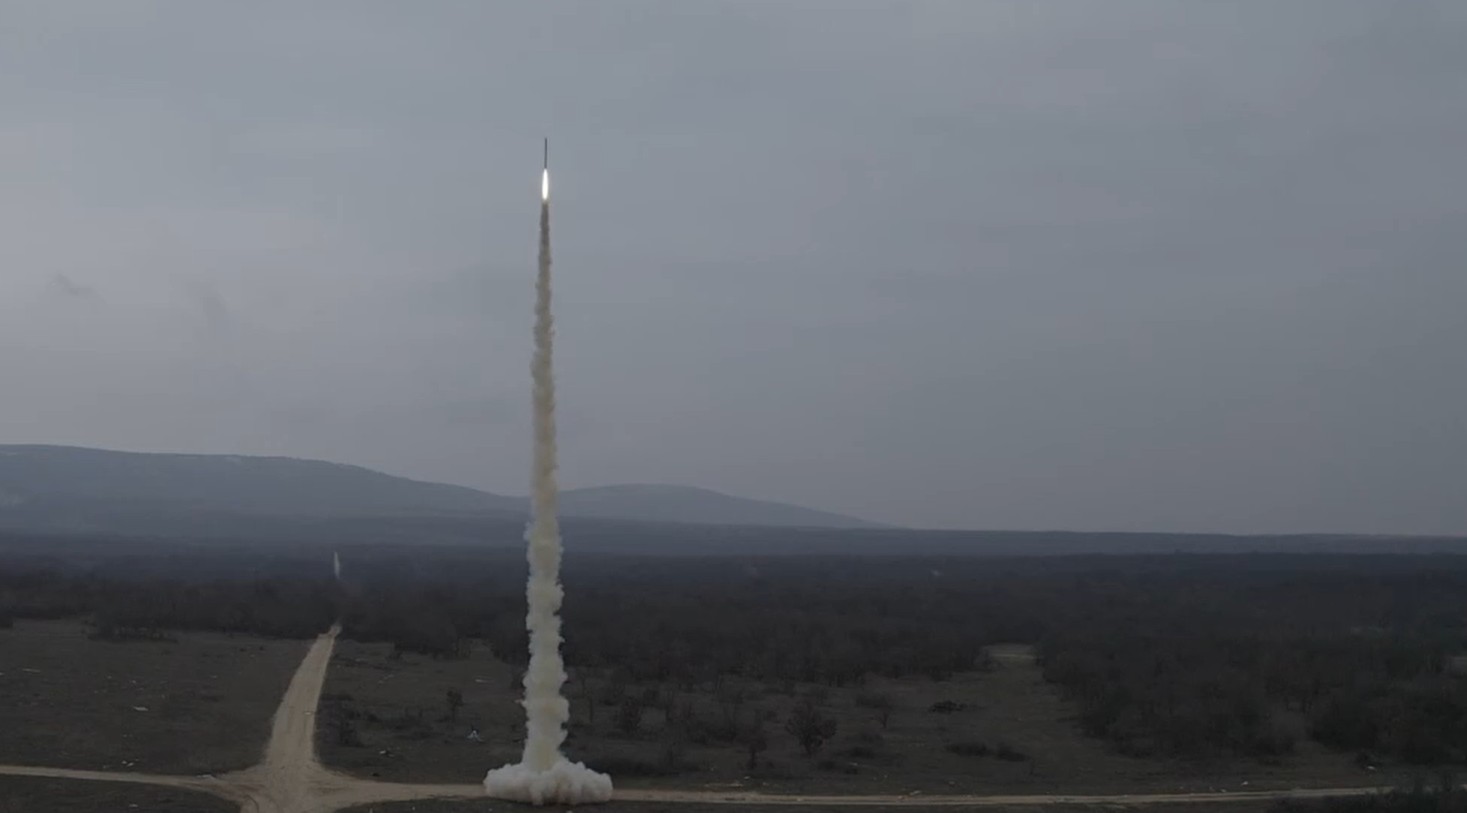 Látványos videón a magyar diákok szuperszonikus rakétája, ami kétszer gyorsabb, mint a hang